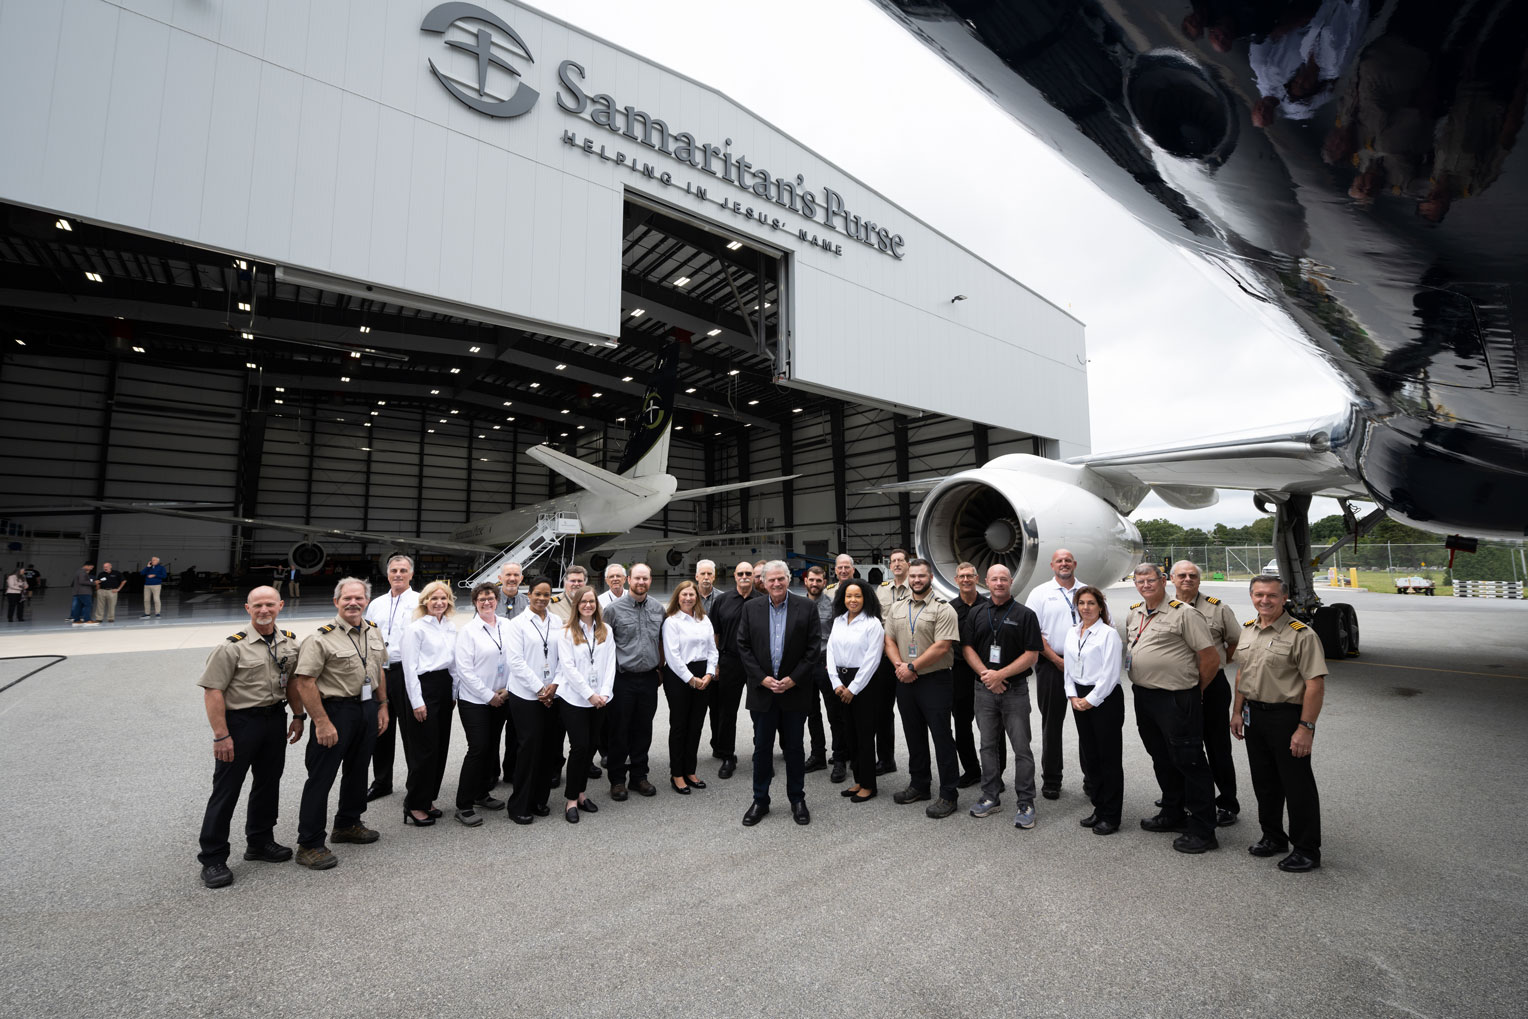 Franklin Graham acompañó al personal aeronáutico, a los miembros clave del equipo y a los invitados especiales para inaugurar oficialmente nuestro nuevo centro de transporte aéreo para respuestas en Greensboro, Carolina del Norte.